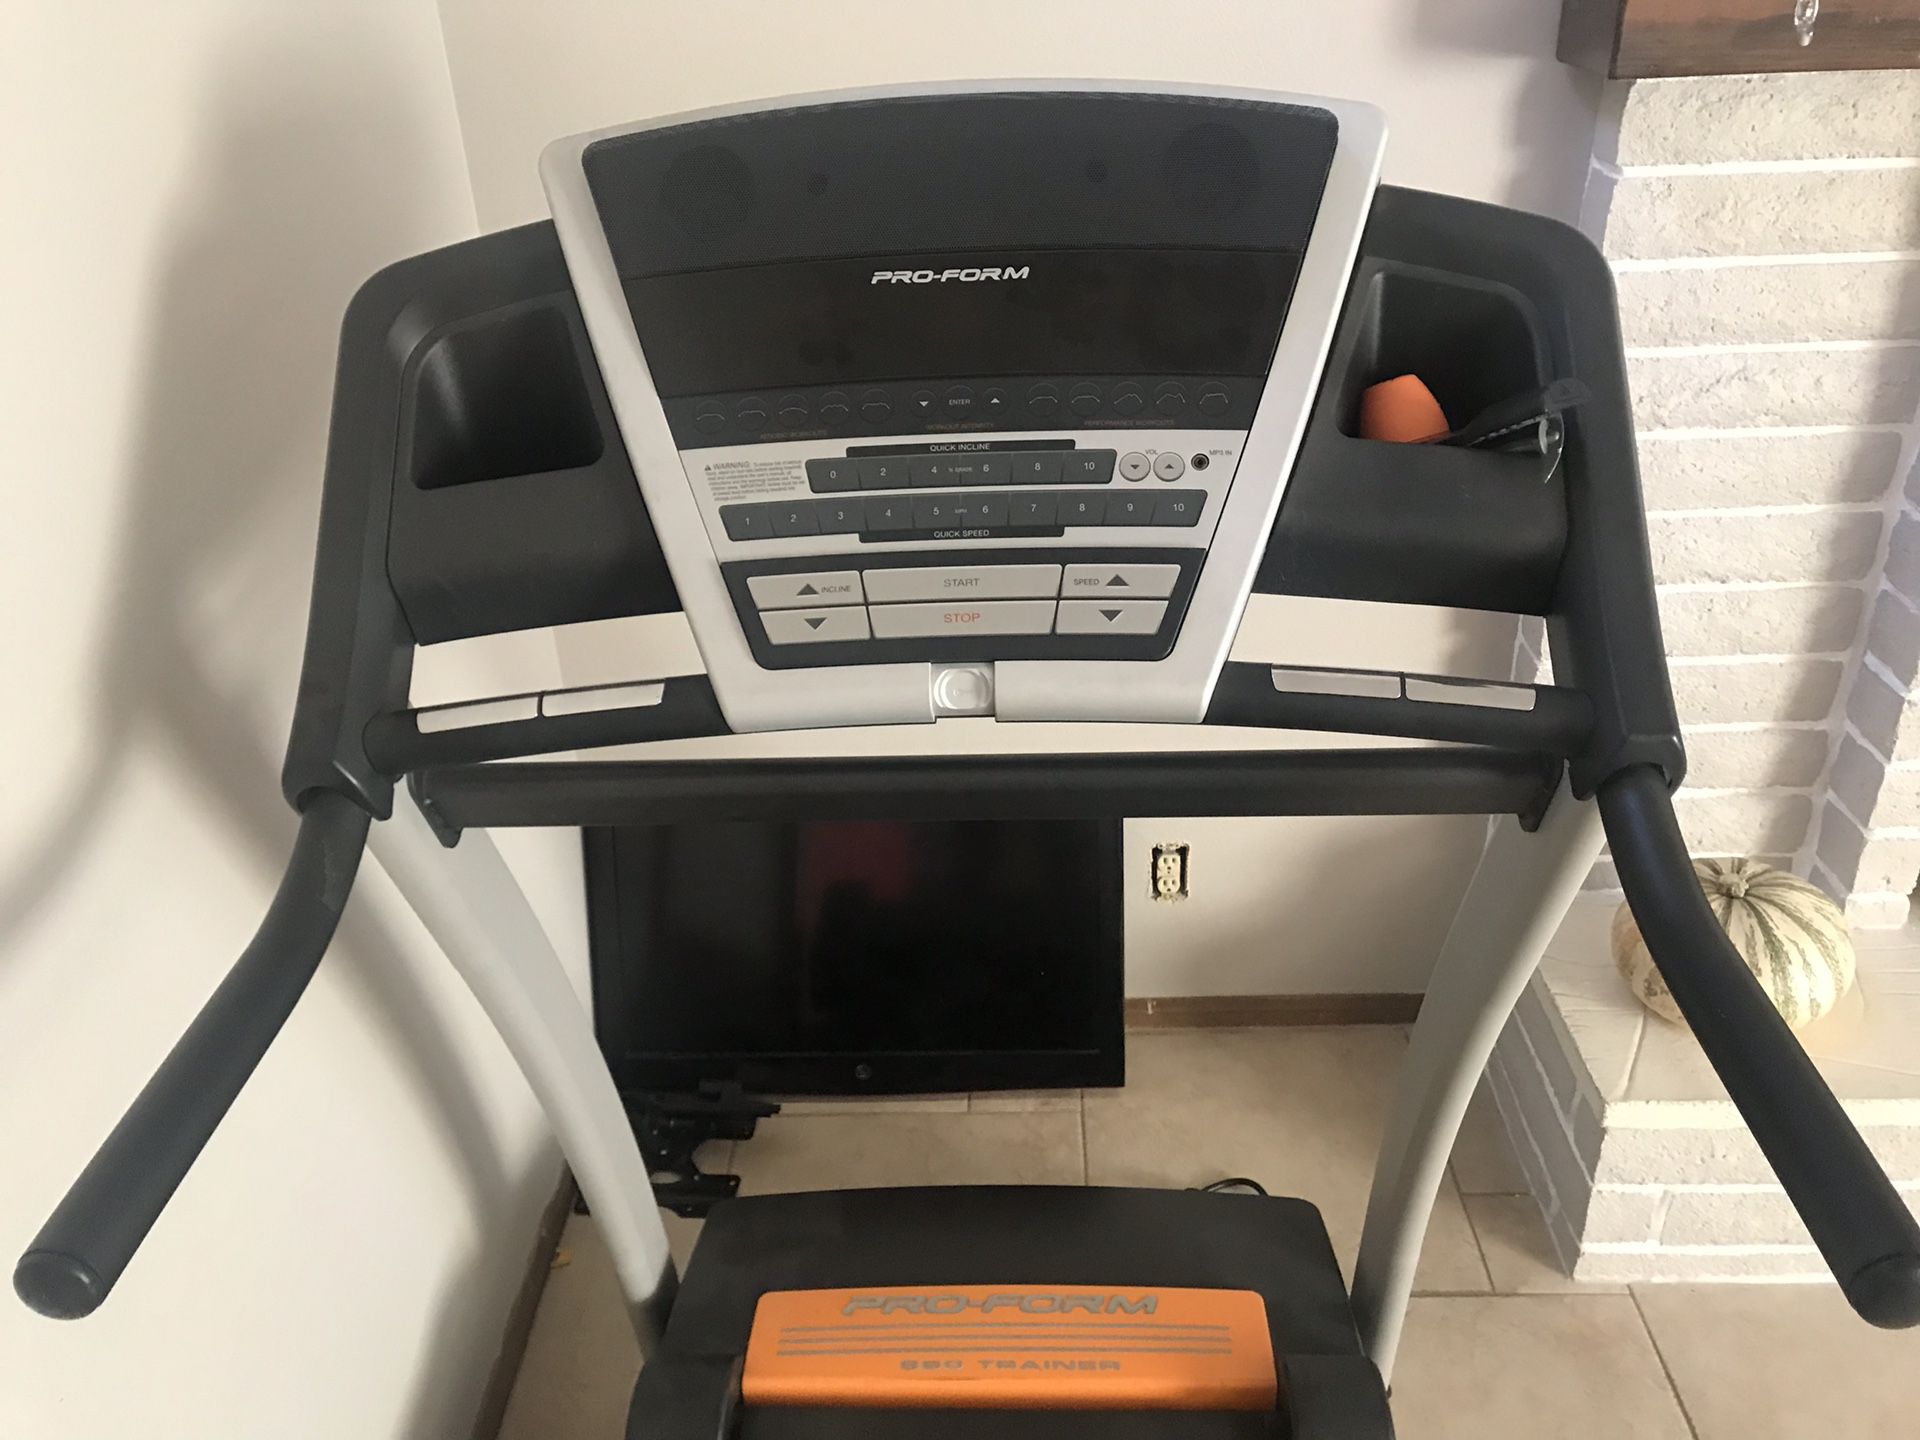 Great condition treadmill